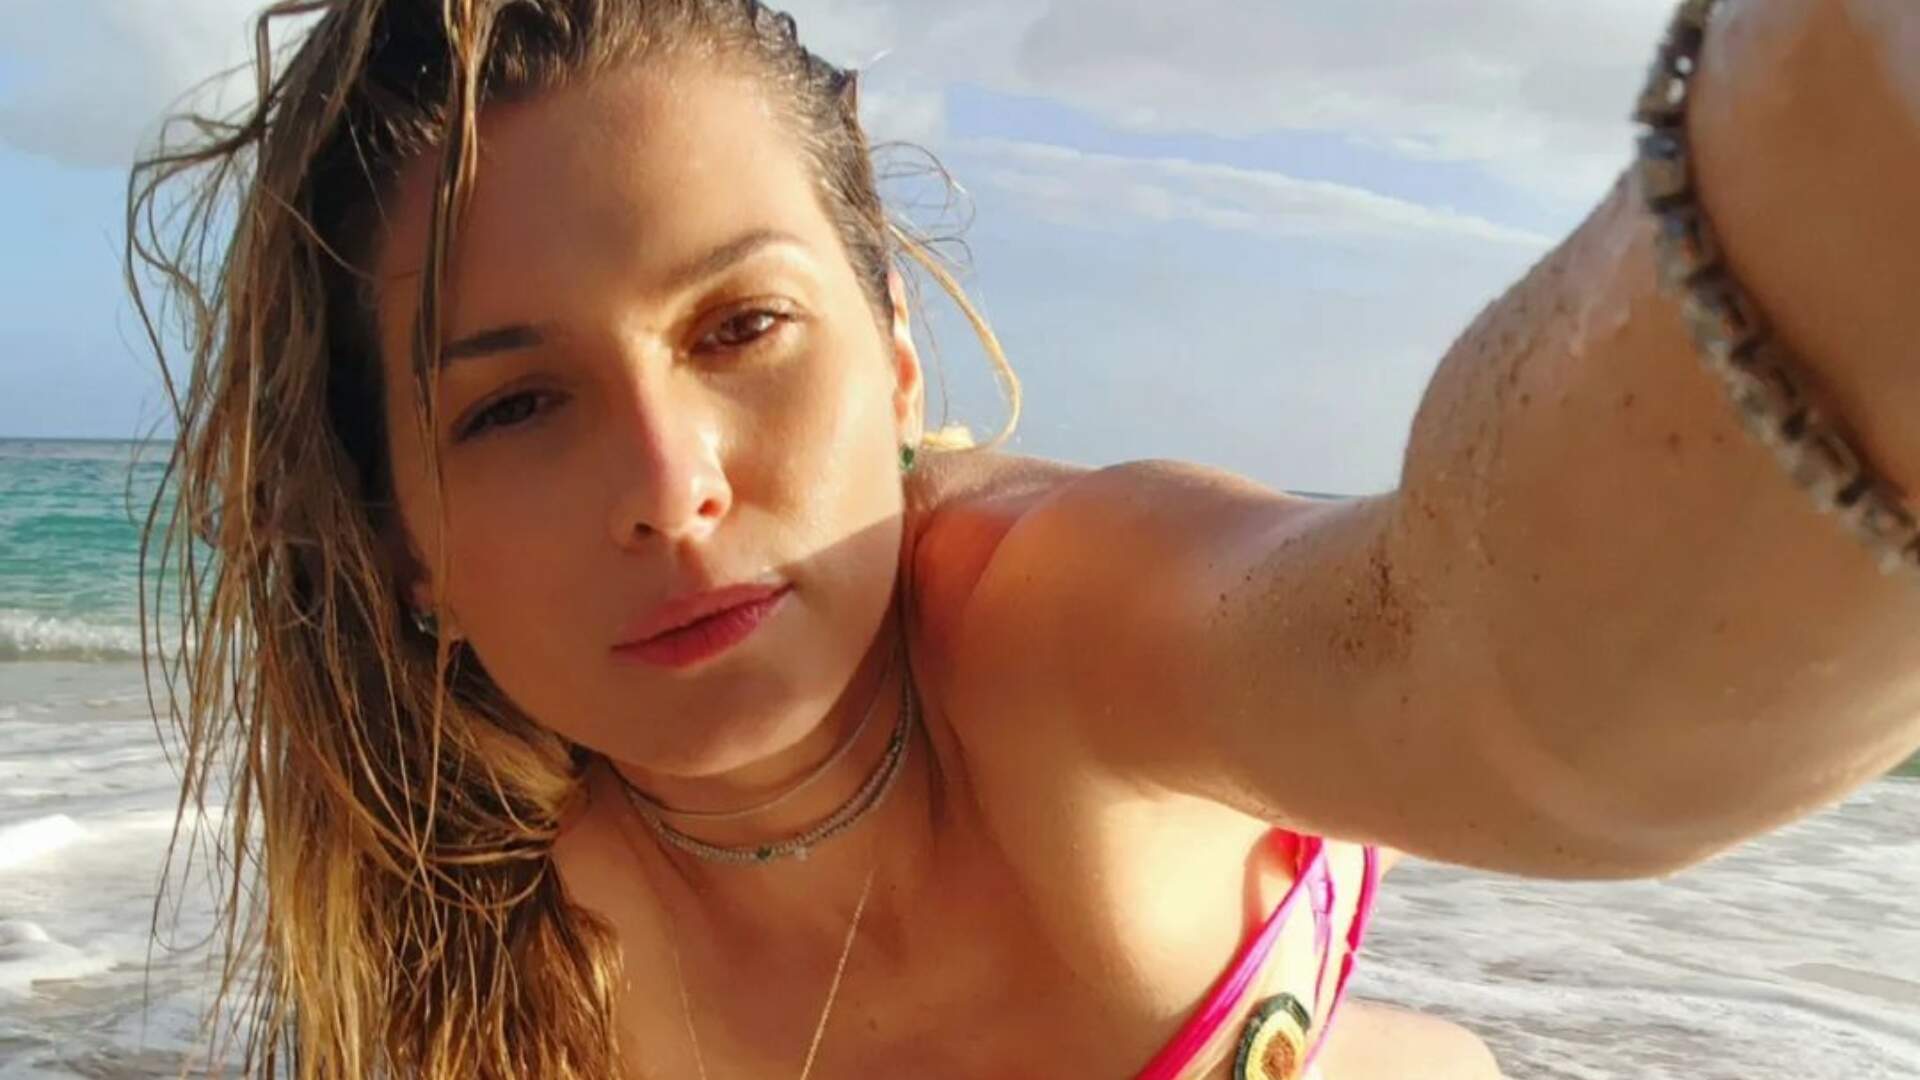 Lívia Andrade desmente ida ao BBB 23 mostrando seu bumbum molhado na praia: “Acreditam agora?” - Metropolitana FM